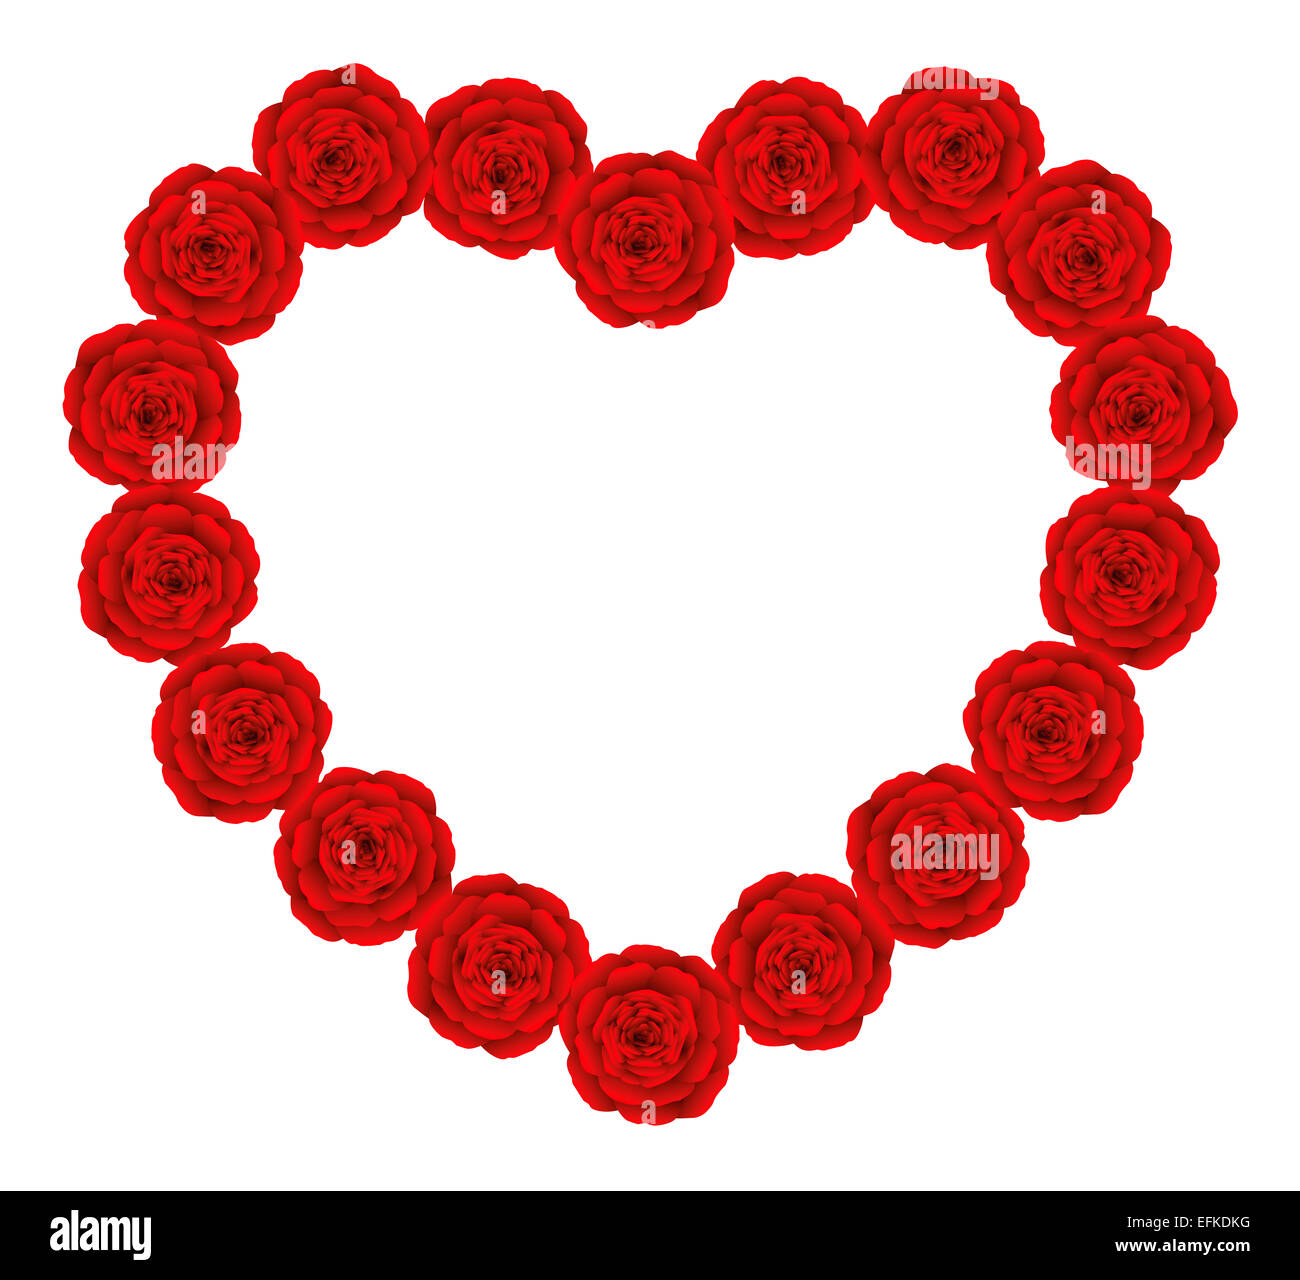 Rote Rosen, die Gestaltung einer duftenden scheinbare Herz. Stockfoto